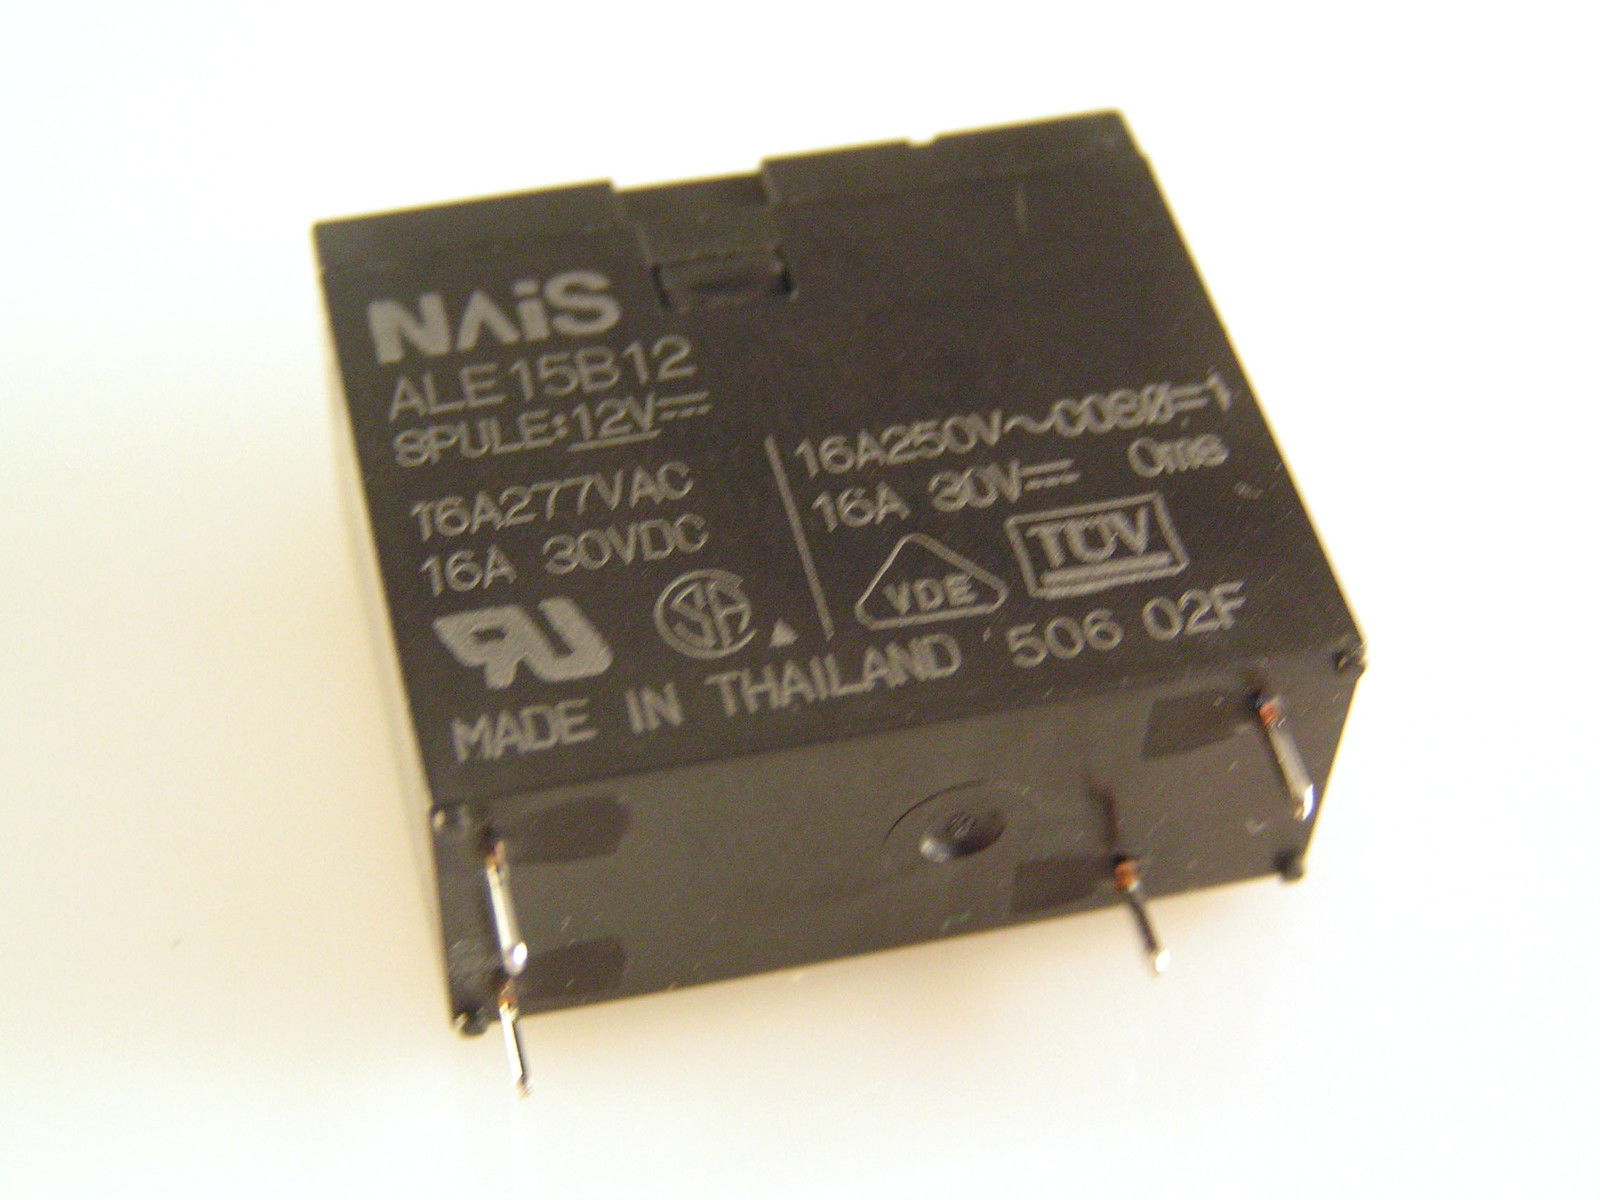 NAiS Microwave Relay ALE15B12 12V DC Coil SPST 16A 250Vac 30Vdc